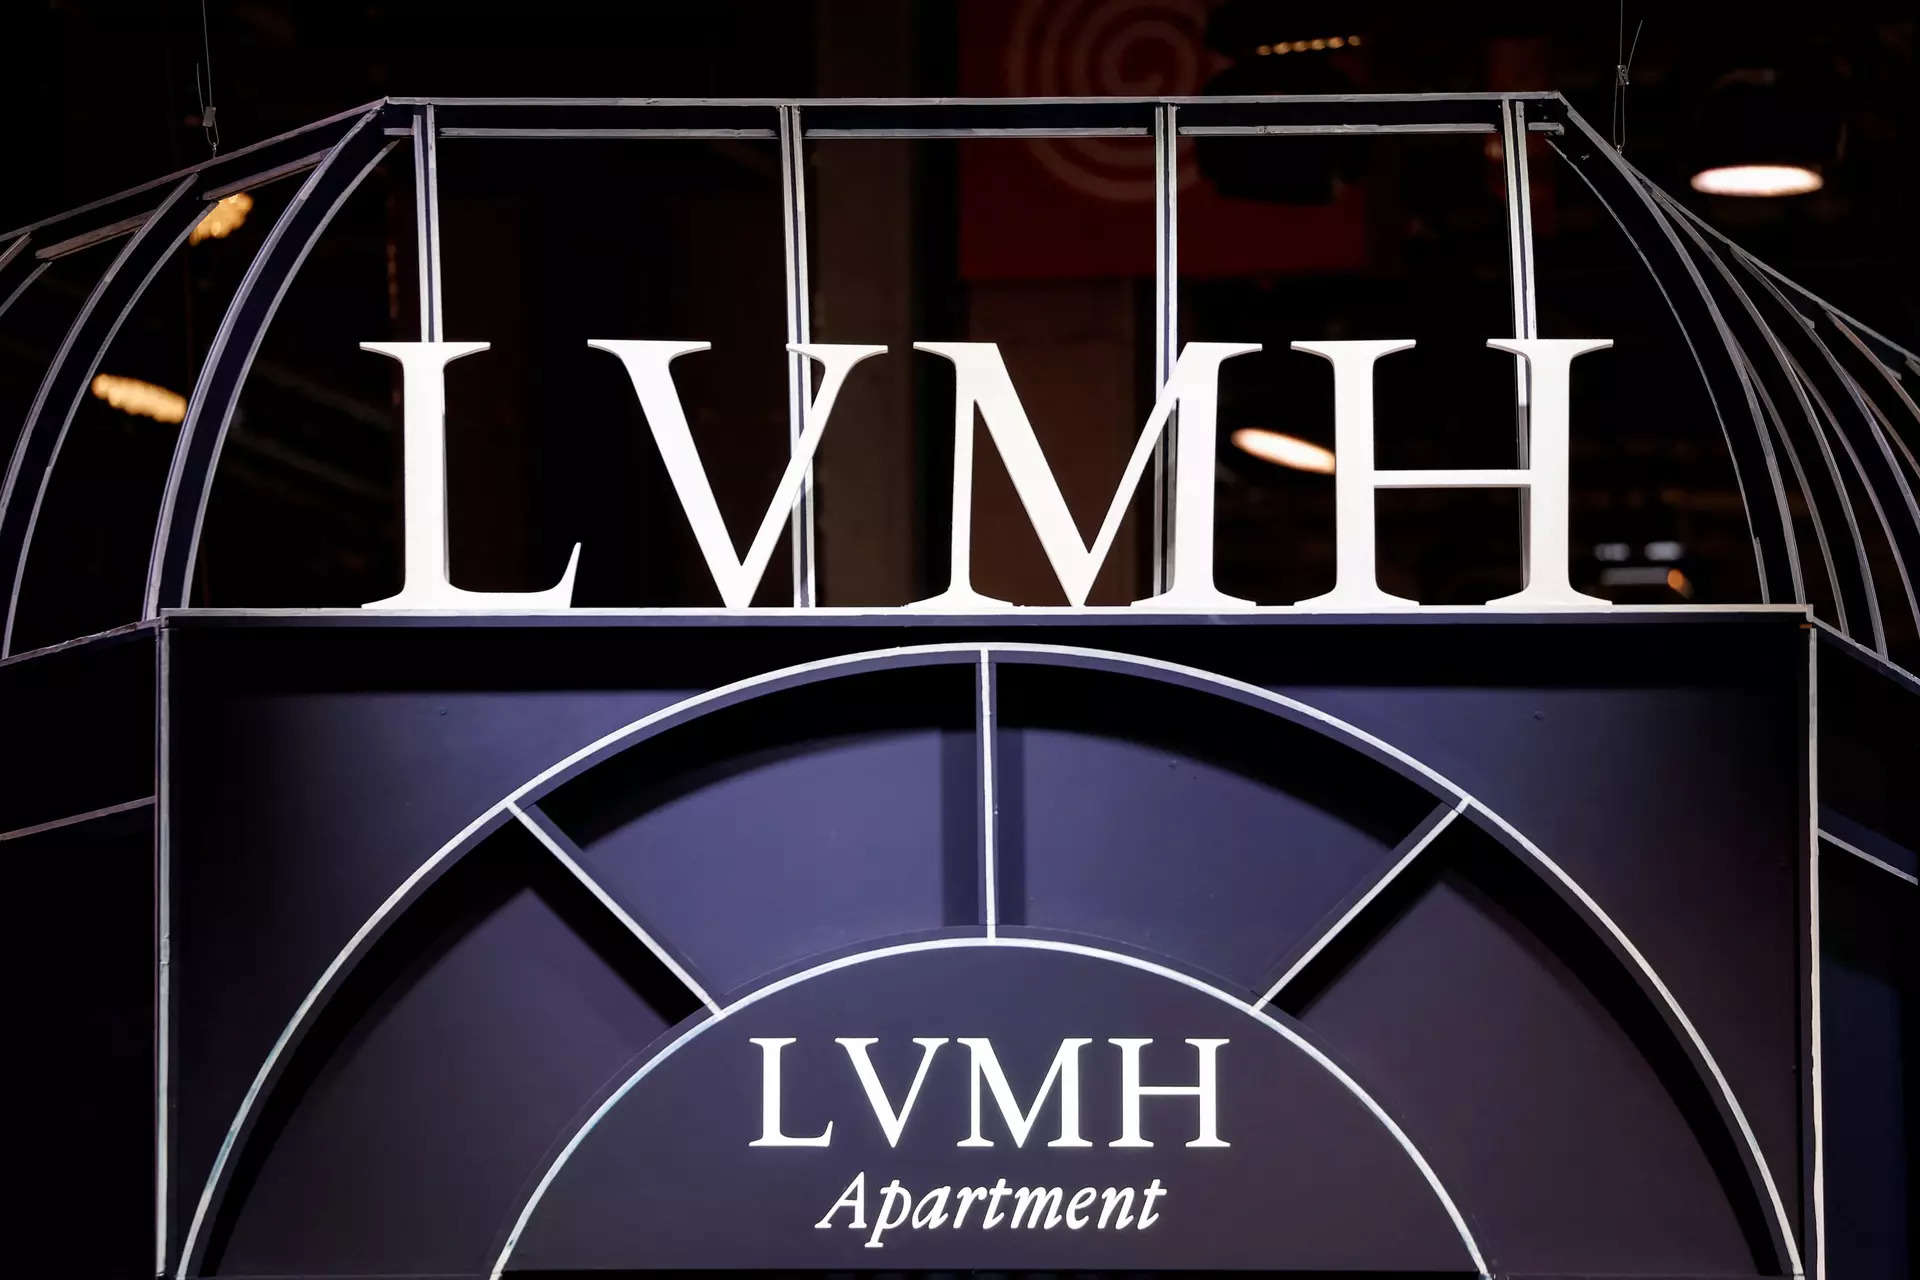 LVMH breaks into world top 10 as market cap nears $500 billion, ET